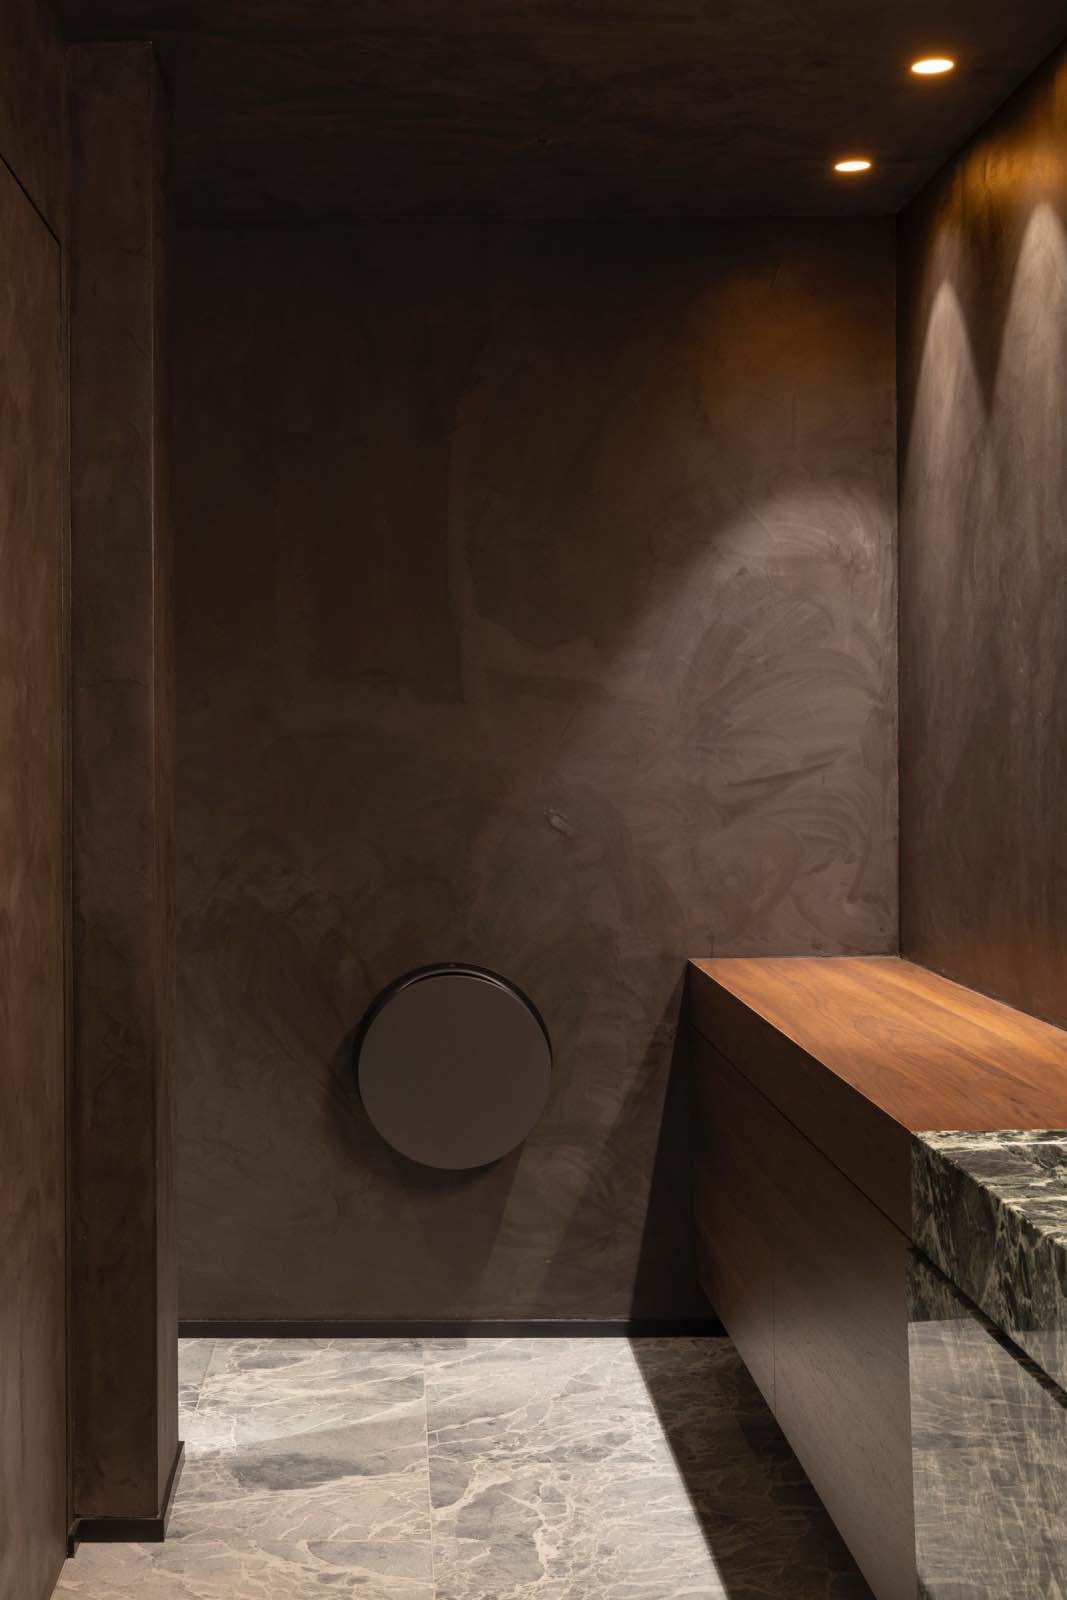 cuarto de baño de tonos neutros, paredes marrón oscuro, mármol, madera